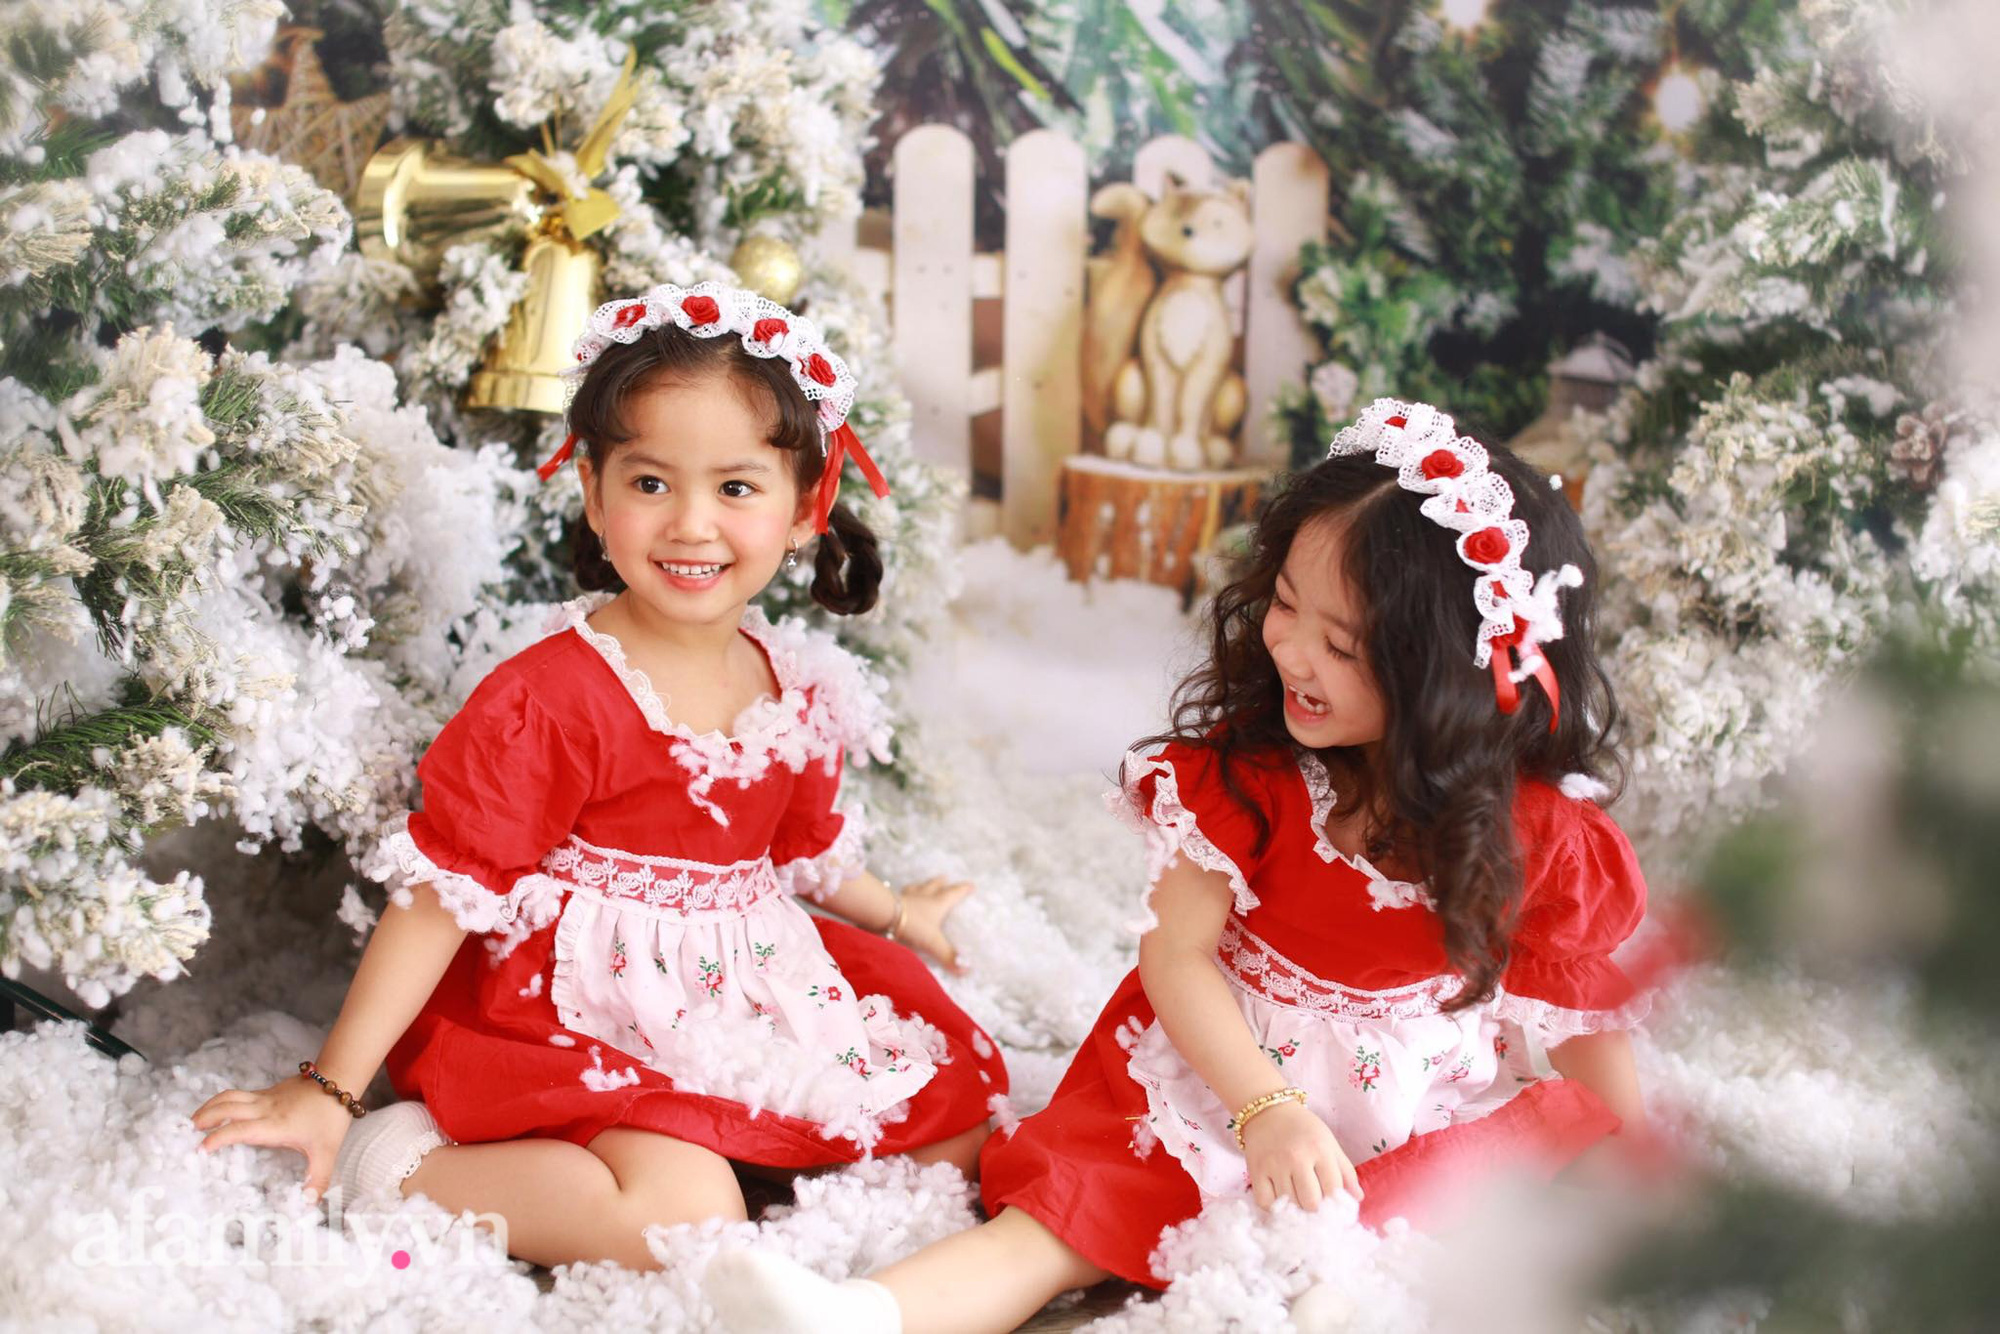 Chụp ảnh giáng sinh cho bé: Chụp những khoảnh khắc đáng yêu của bé trong trang phục Giáng sinh sẽ tạo được không khí lễ hội ấm áp cho gia đình. Bé sẽ thích thú được trang trí và chụp ảnh cùng những người thân yêu.